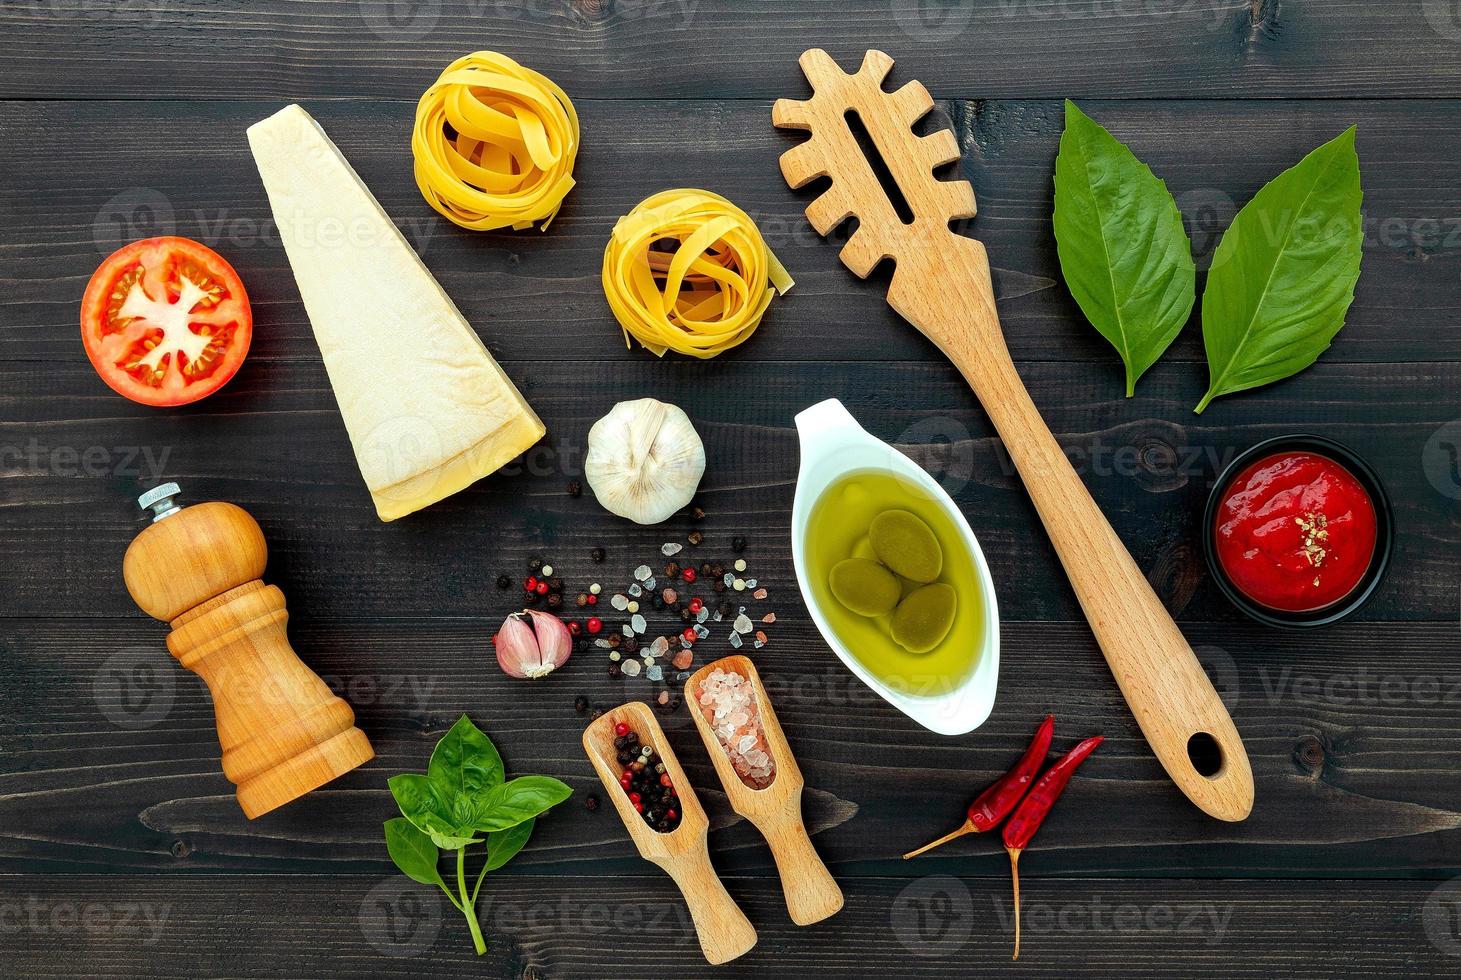 die Pasta auf schwarzem hölzernem Hintergrundgelbe italienische Pasta mit Zutaten italienisches Essen und Menükonzept foto